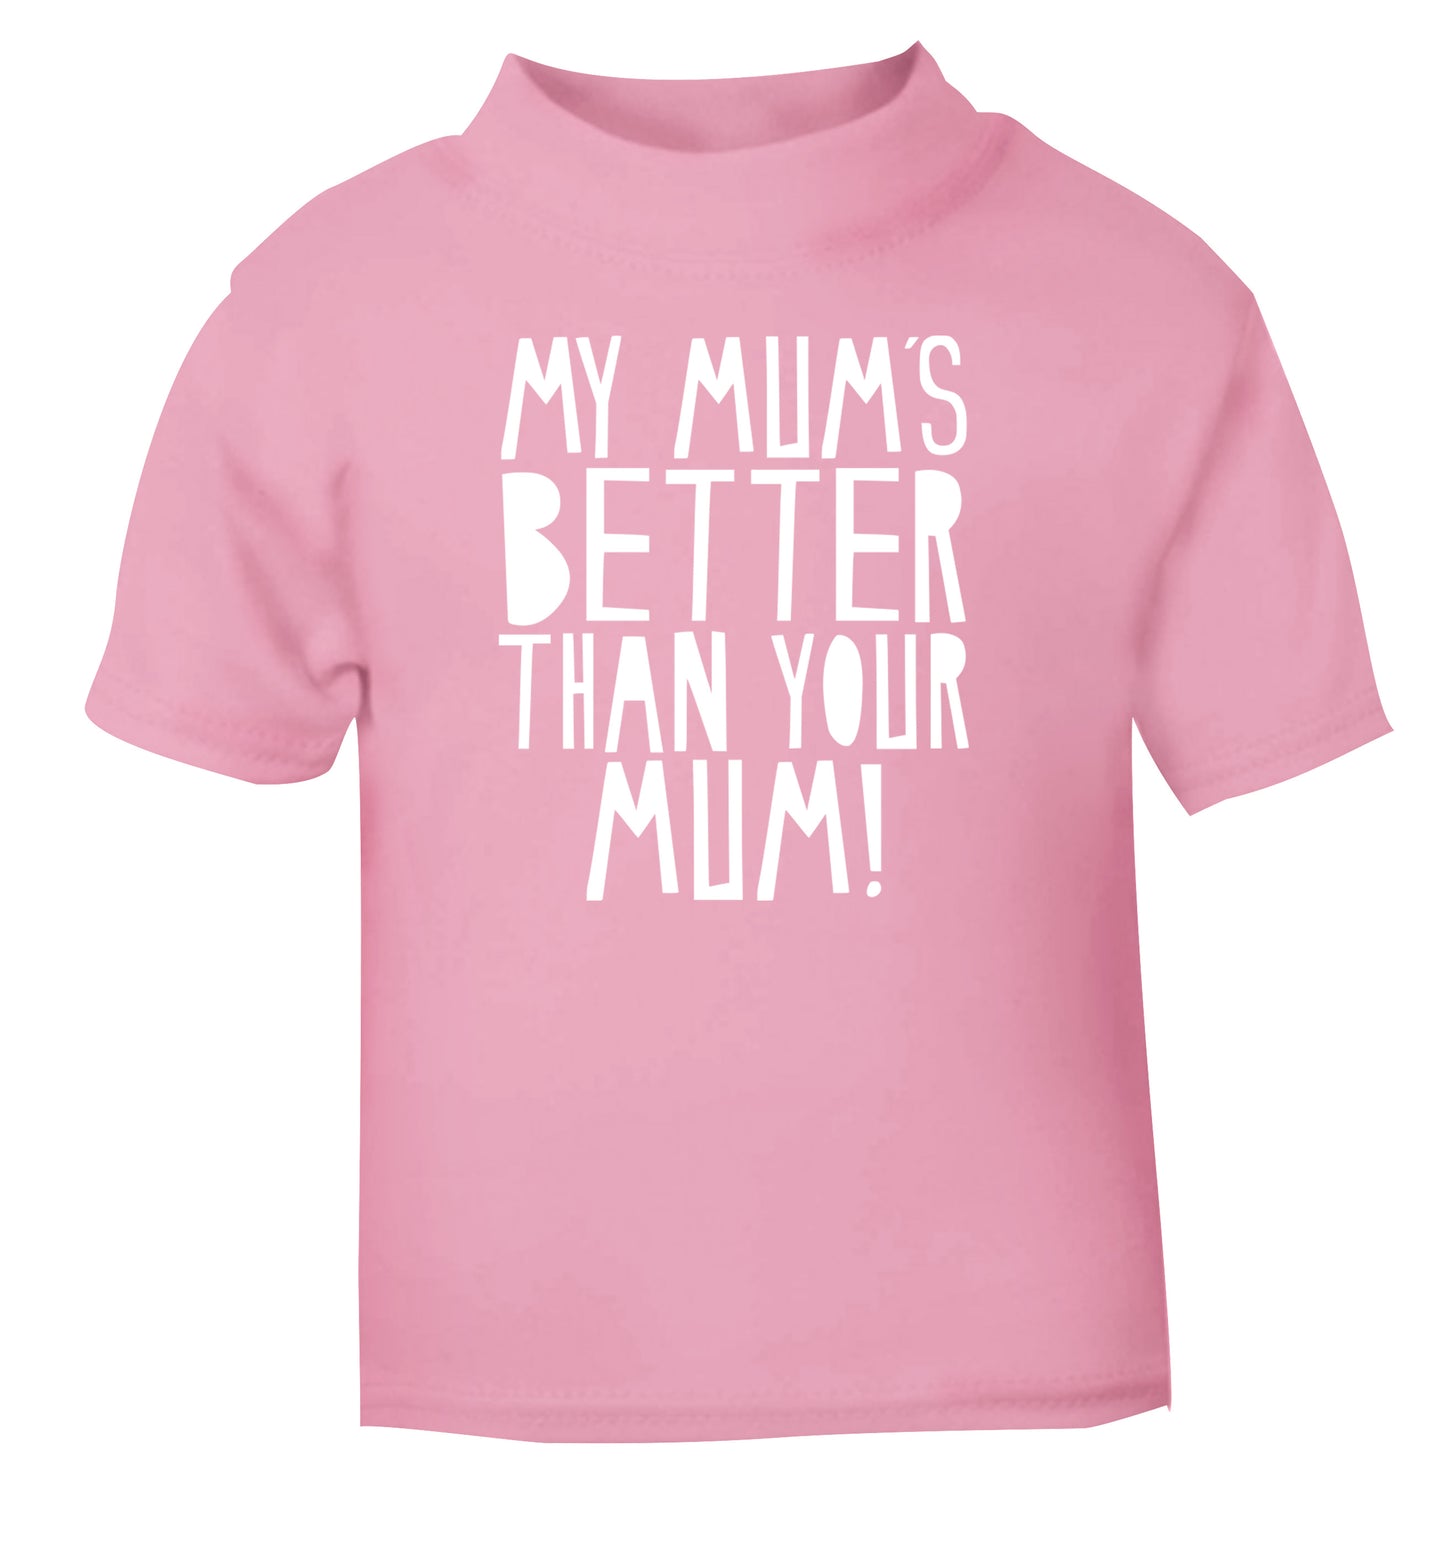 My mum's better than your mum light pink baby toddler Tshirt 2 Years